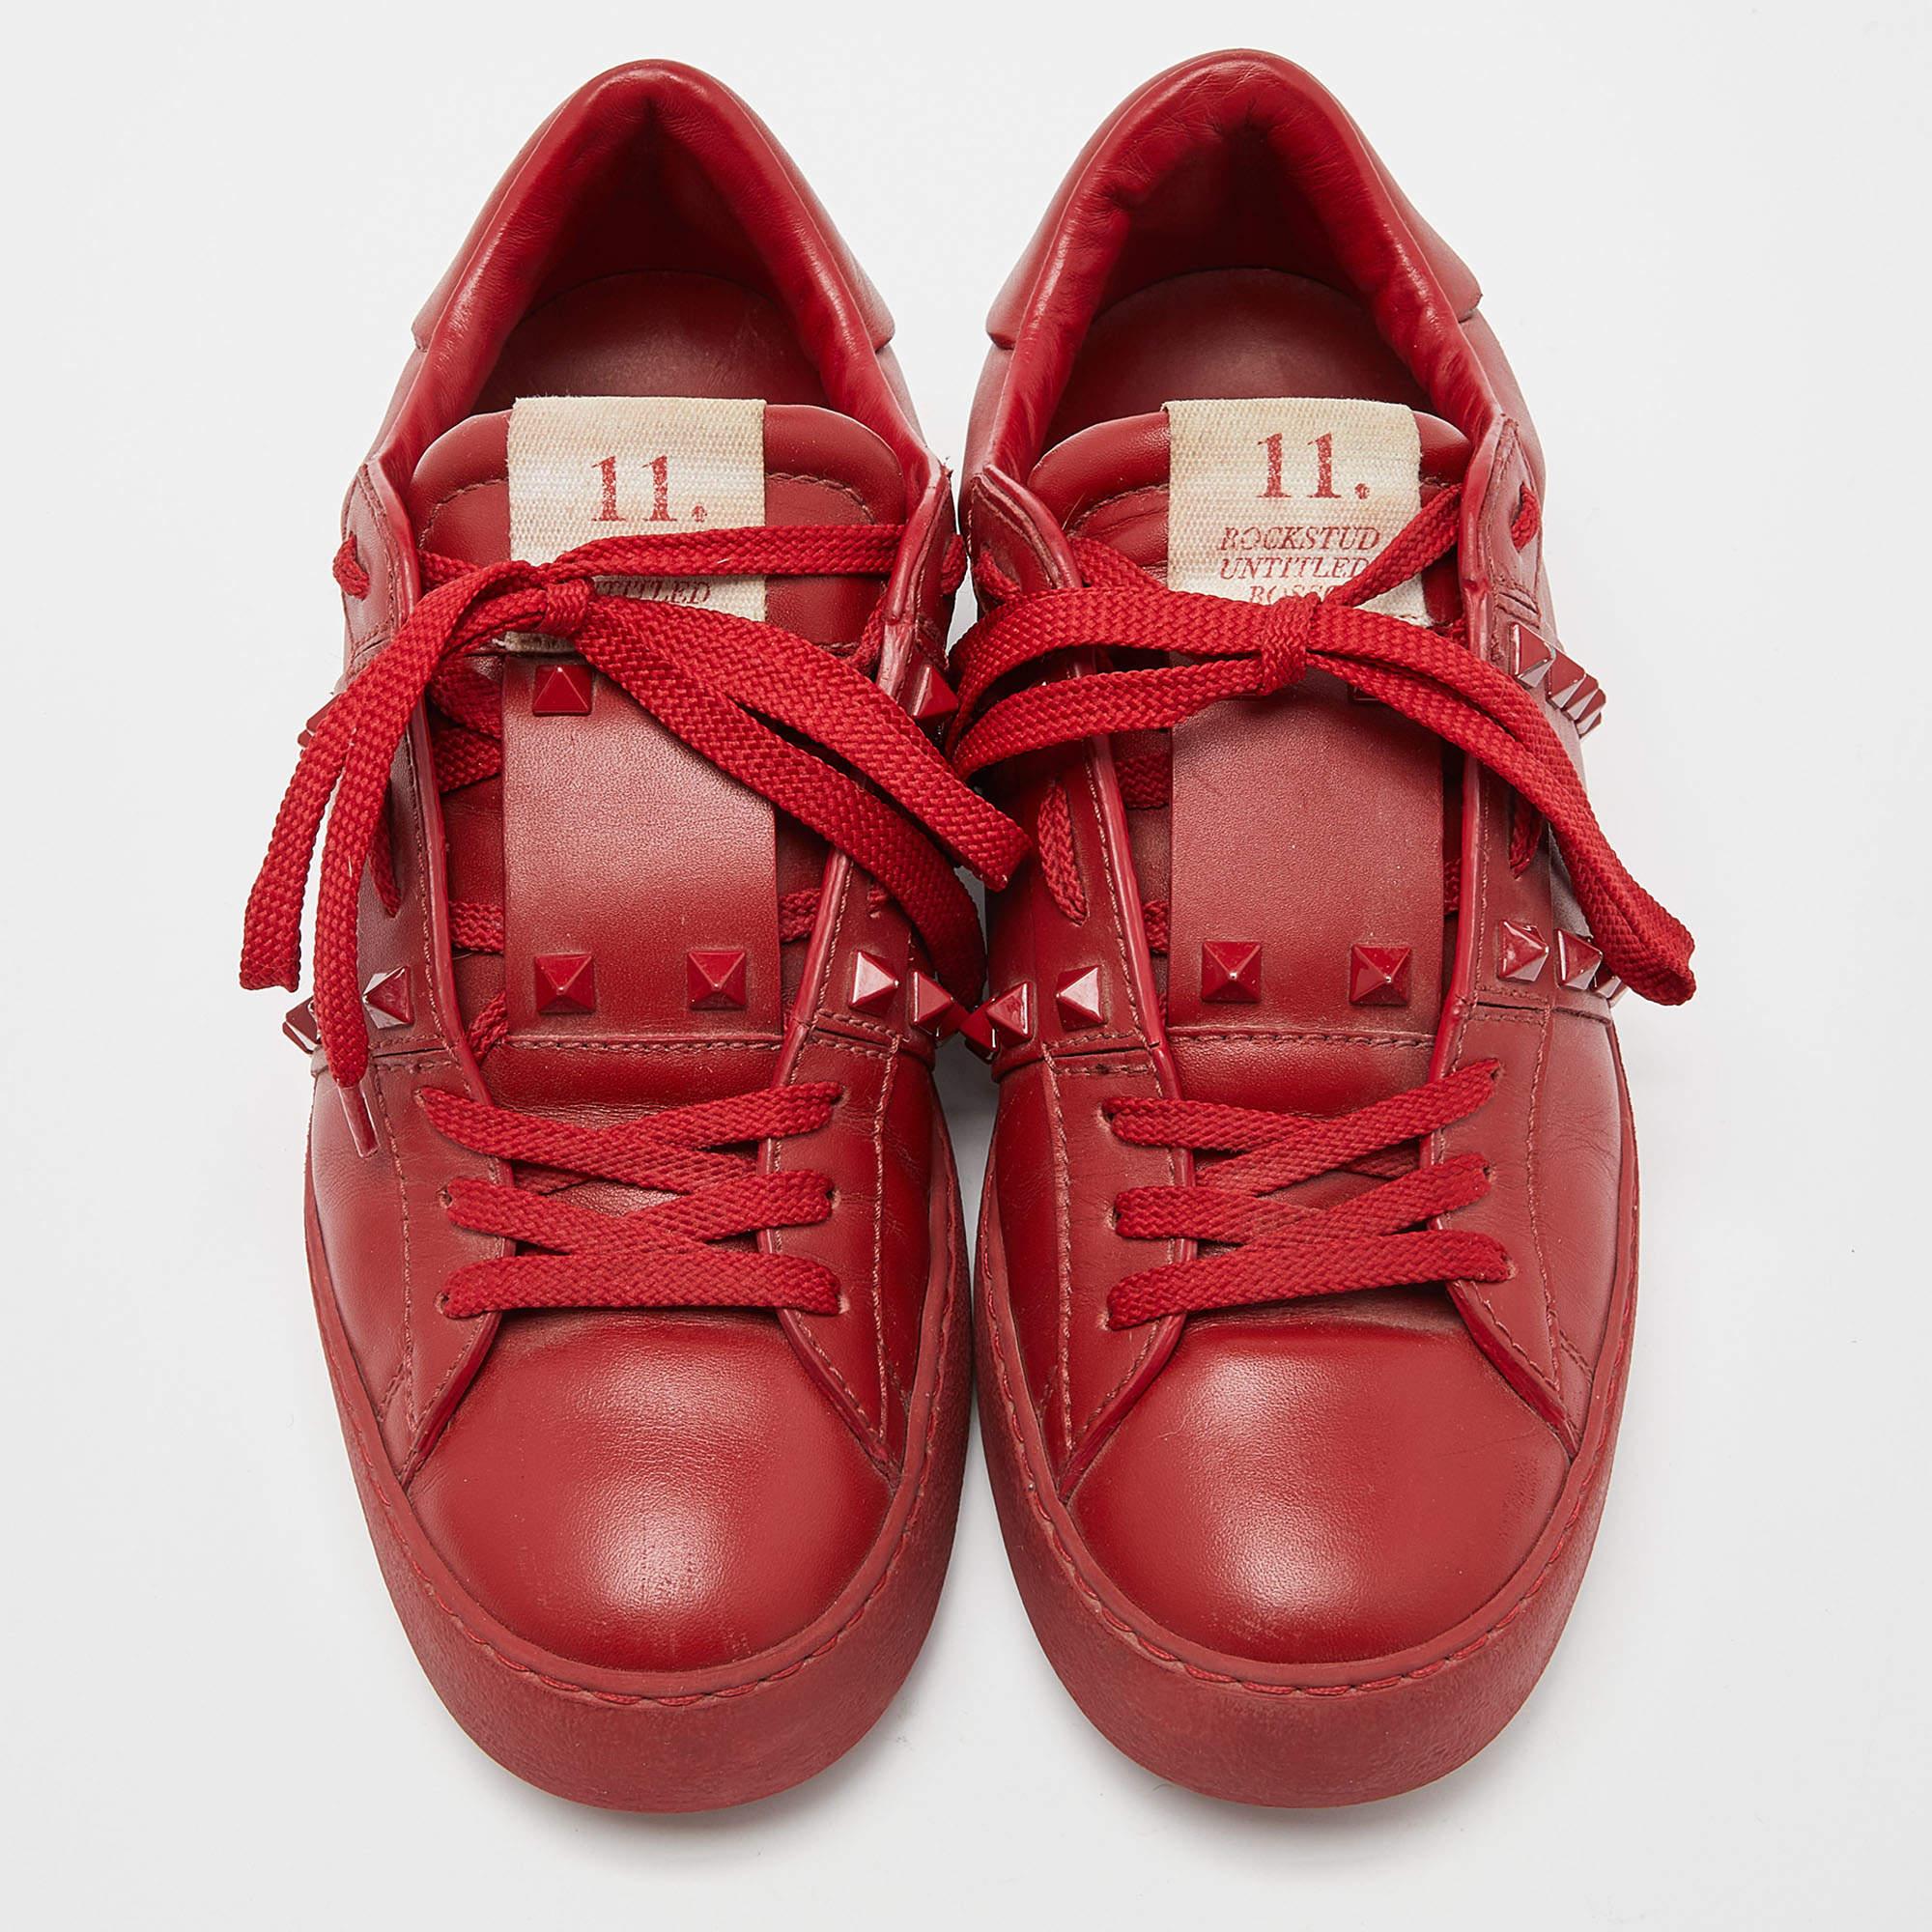 Misez sur un style Lux en portant ces baskets basses Valentino Rockstud Untitled avec vos tenues décontractées. Confectionnées en cuir rouge avec les bordures Rockstud signature, ces chaussures à lacets sont faciles à porter.

